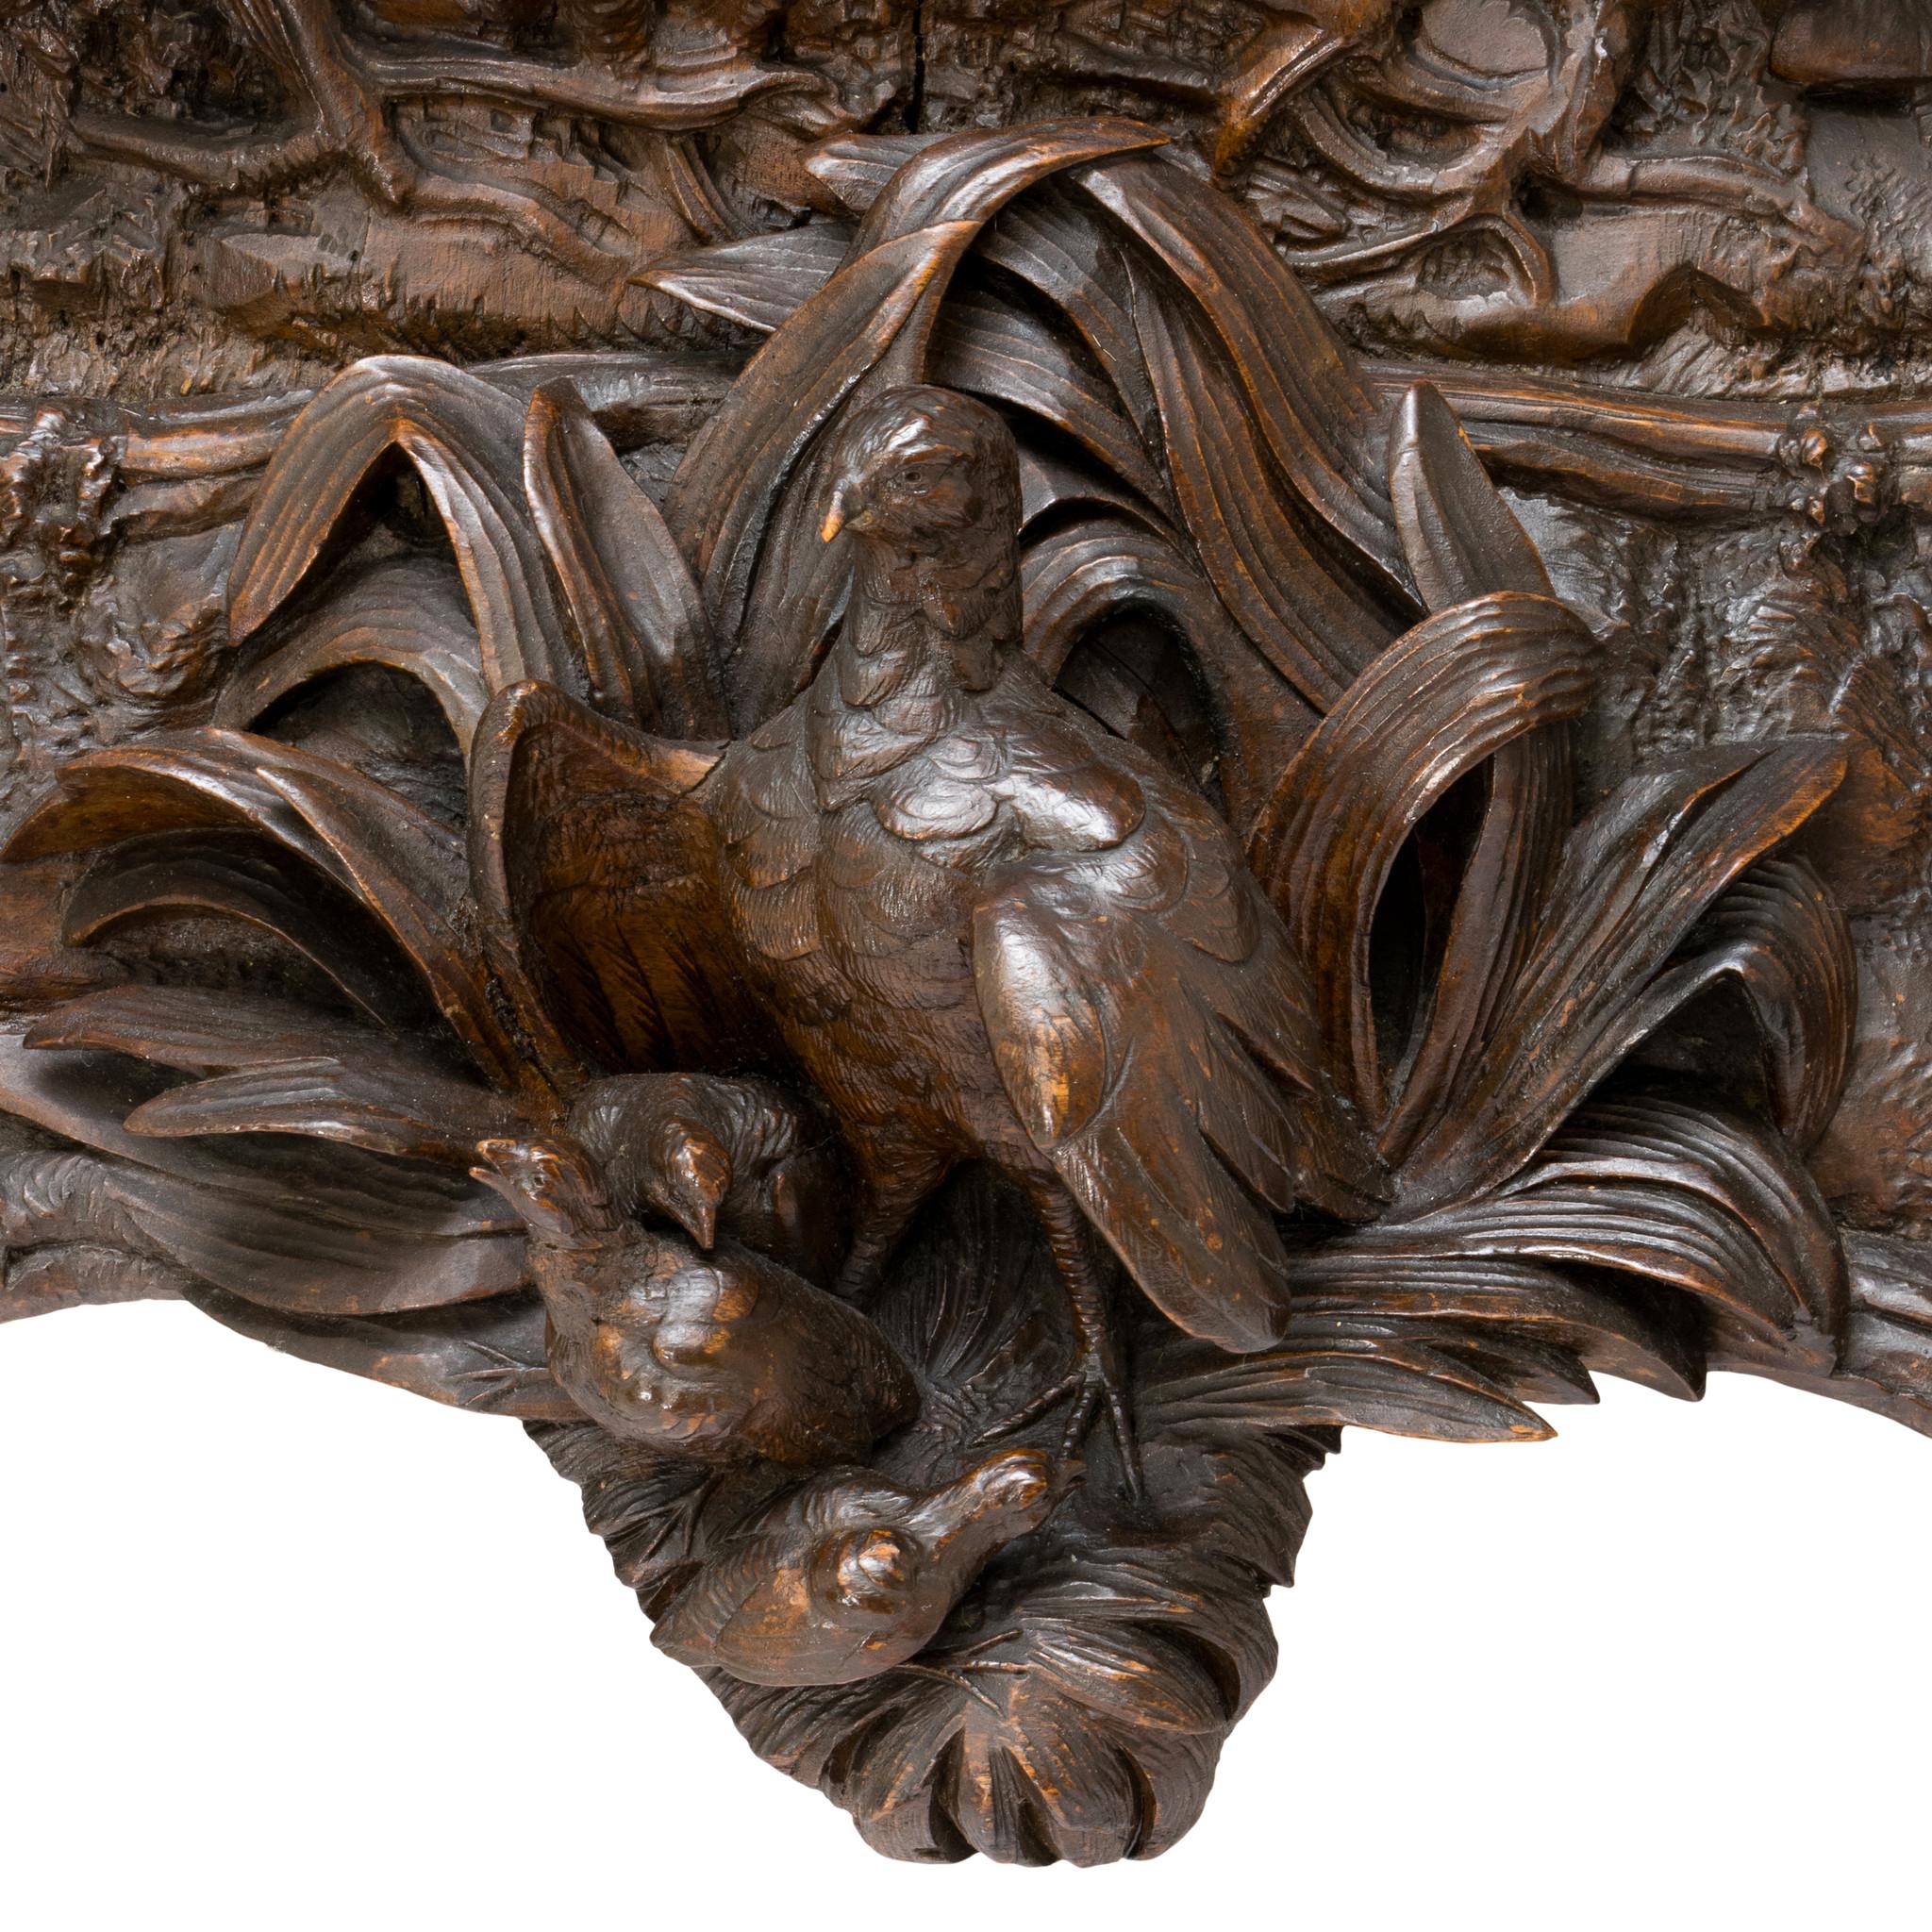 Horloge de jeu Black Forest sculptée en Suisse. Cette pièce exceptionnelle est ornée d'un cerf daim et d'une biche. Autour et sous l'horloge, des feuilles, des fleurs, des branches et d'autres motifs naturels sont lourdement sculptés, et un gibier à